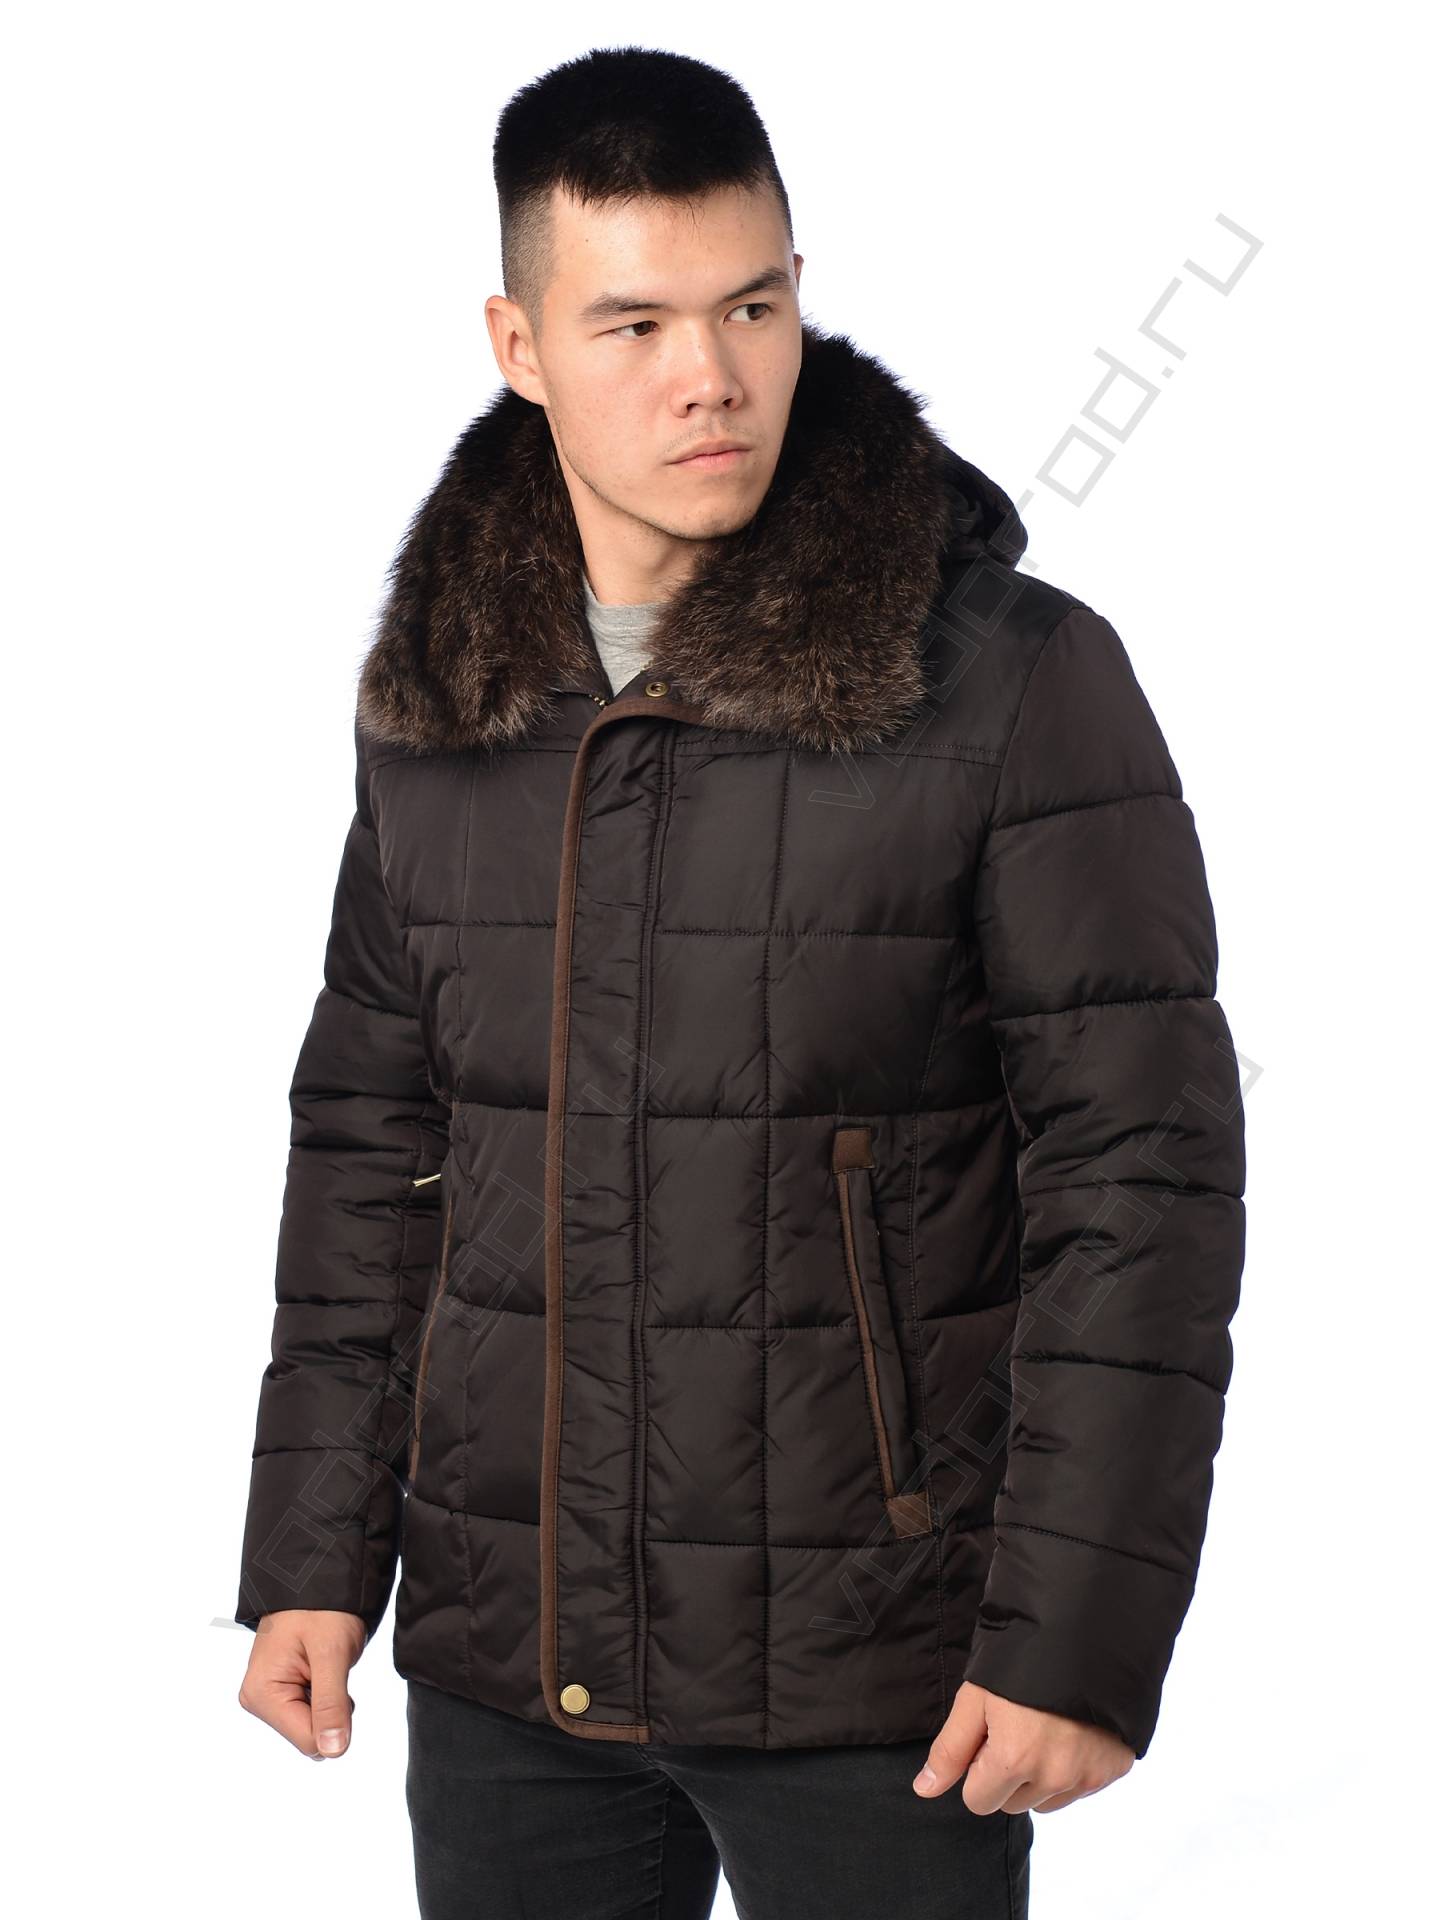 Зимняя куртка мужская цвет коричневый